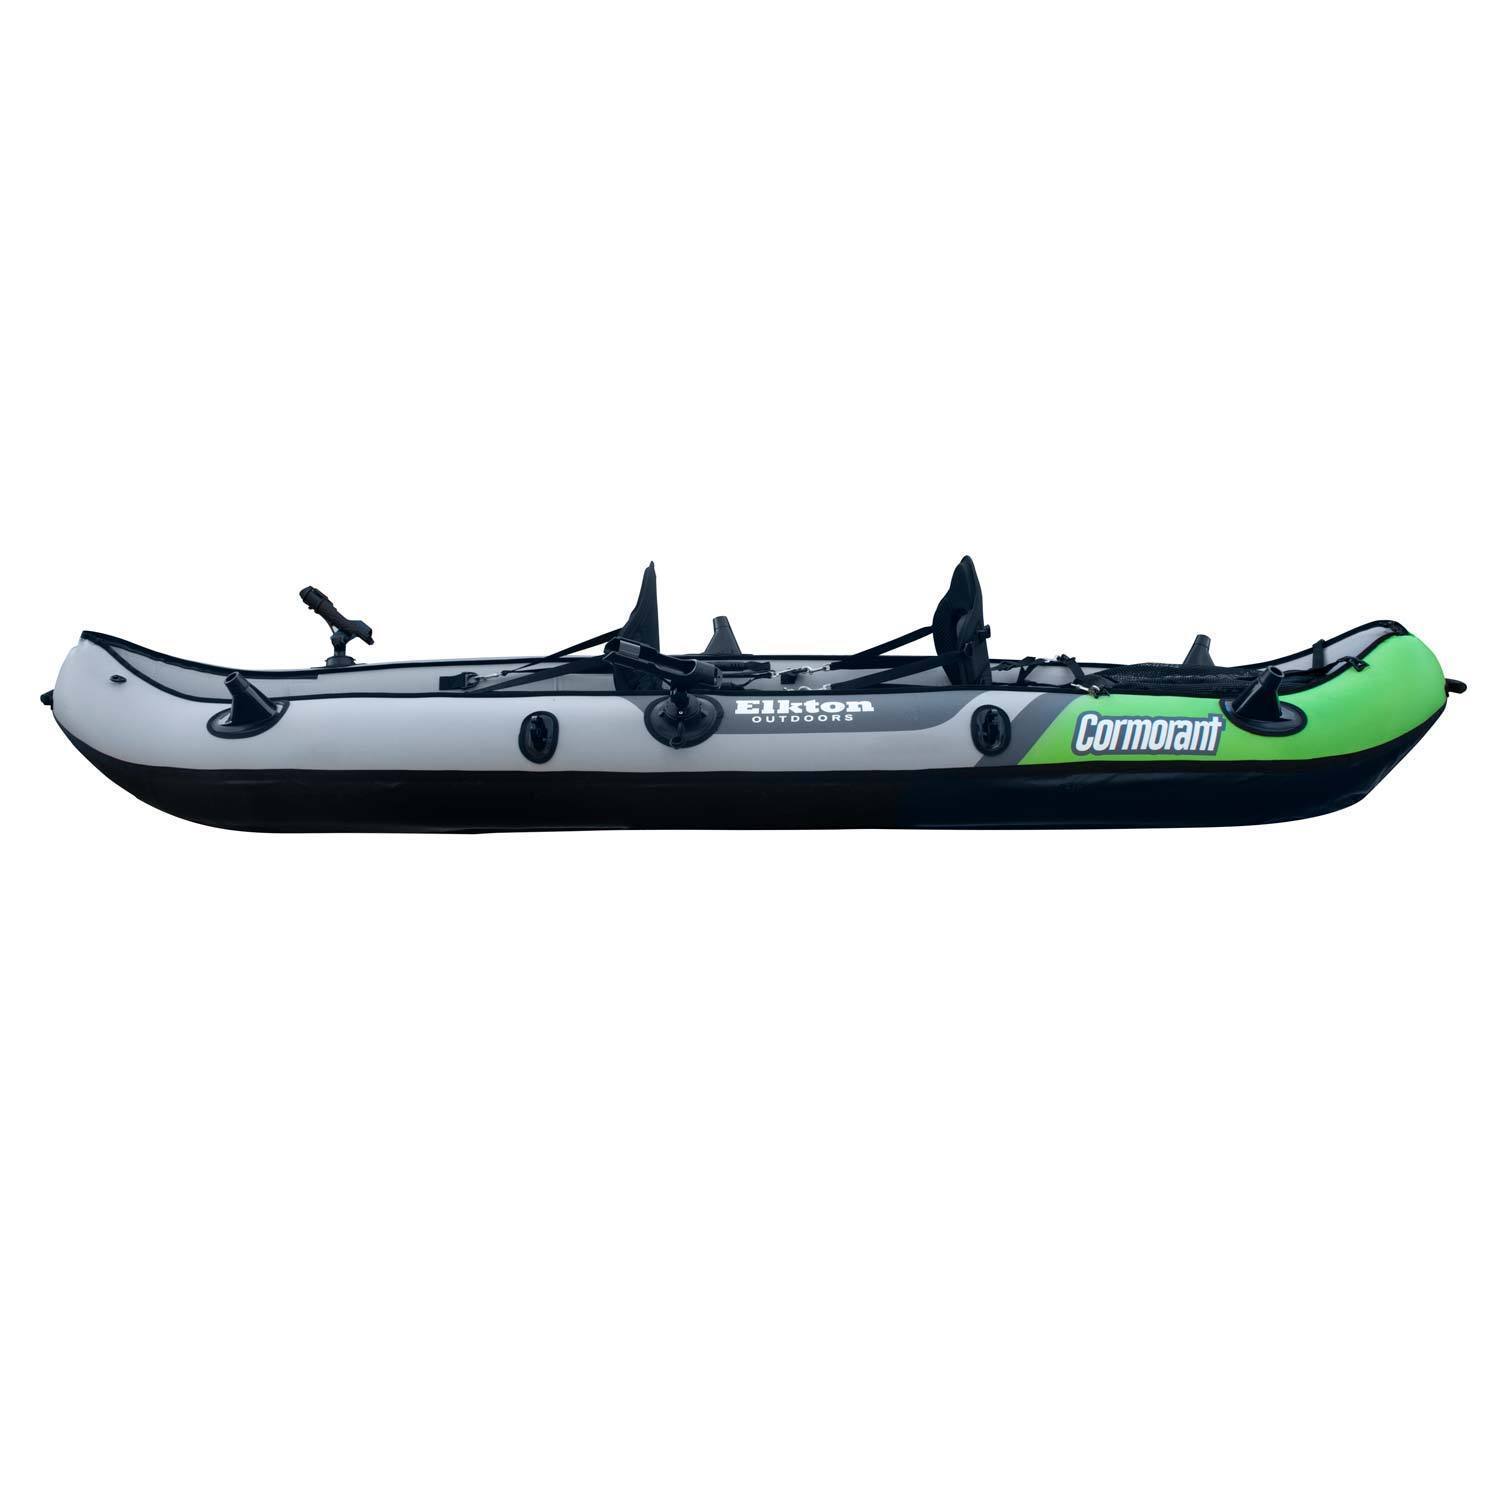 Elkton Outdoors Comorant 2 Person Kayak, 10 Foot Inflatable Fishing Kayak, Full Kit! - image 10 of 11